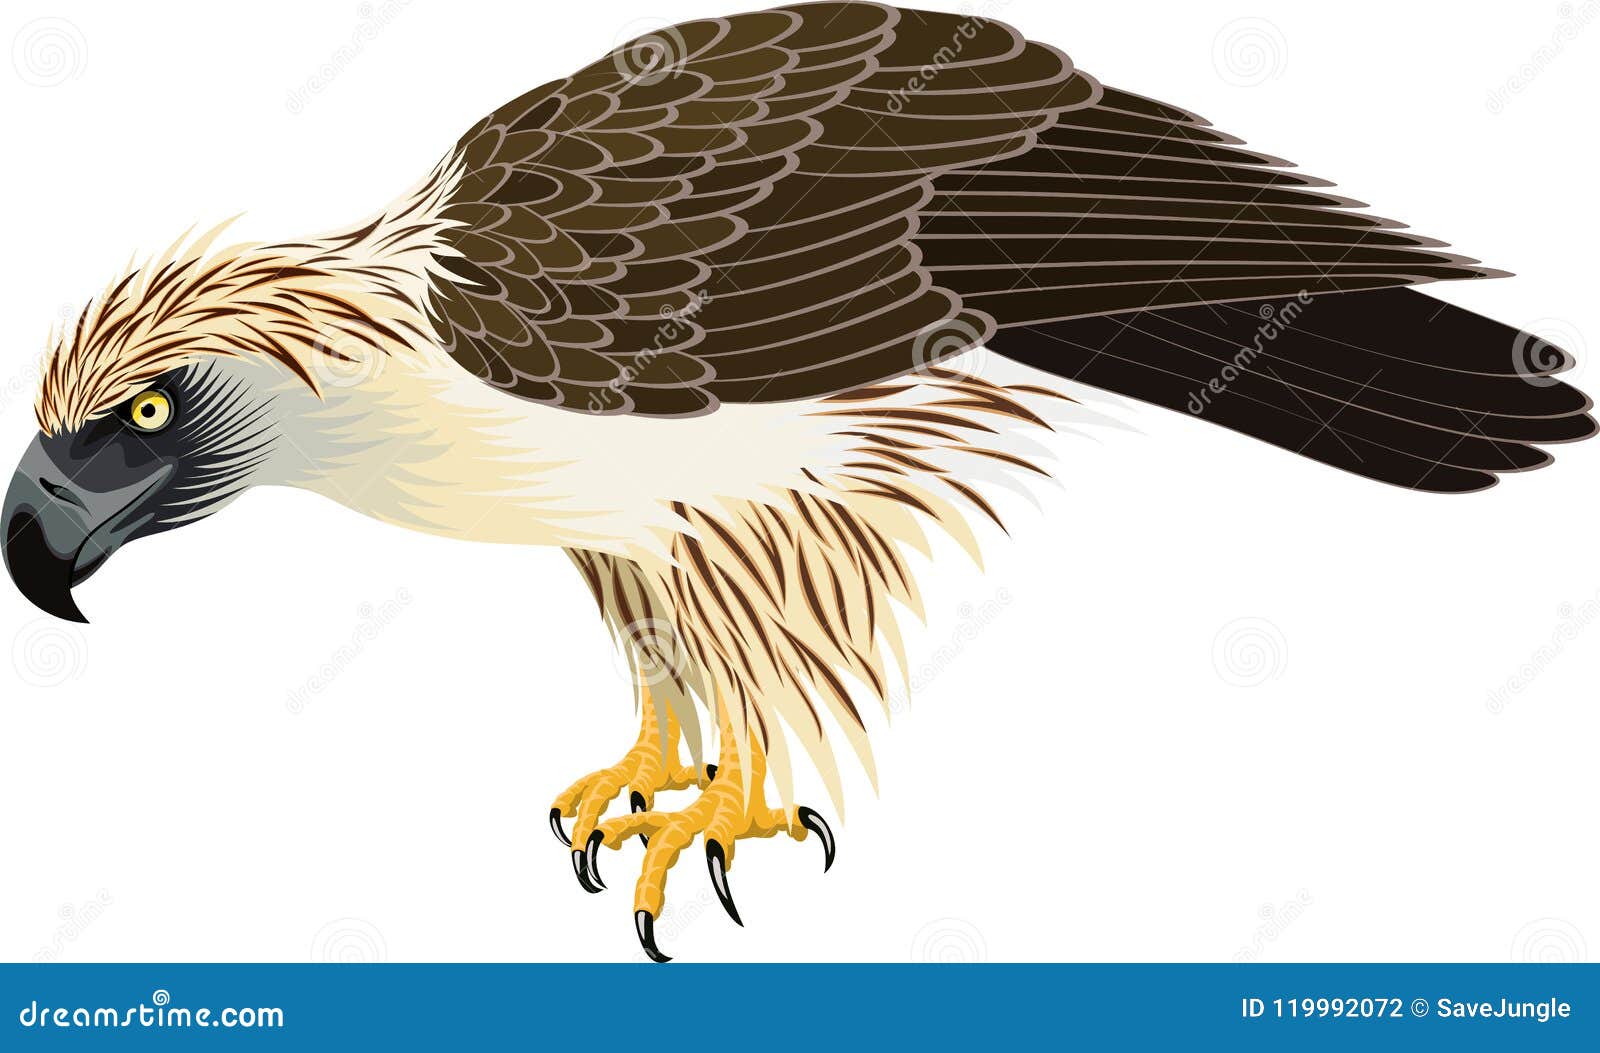  philippine eagle - pithecophaga jefferyil